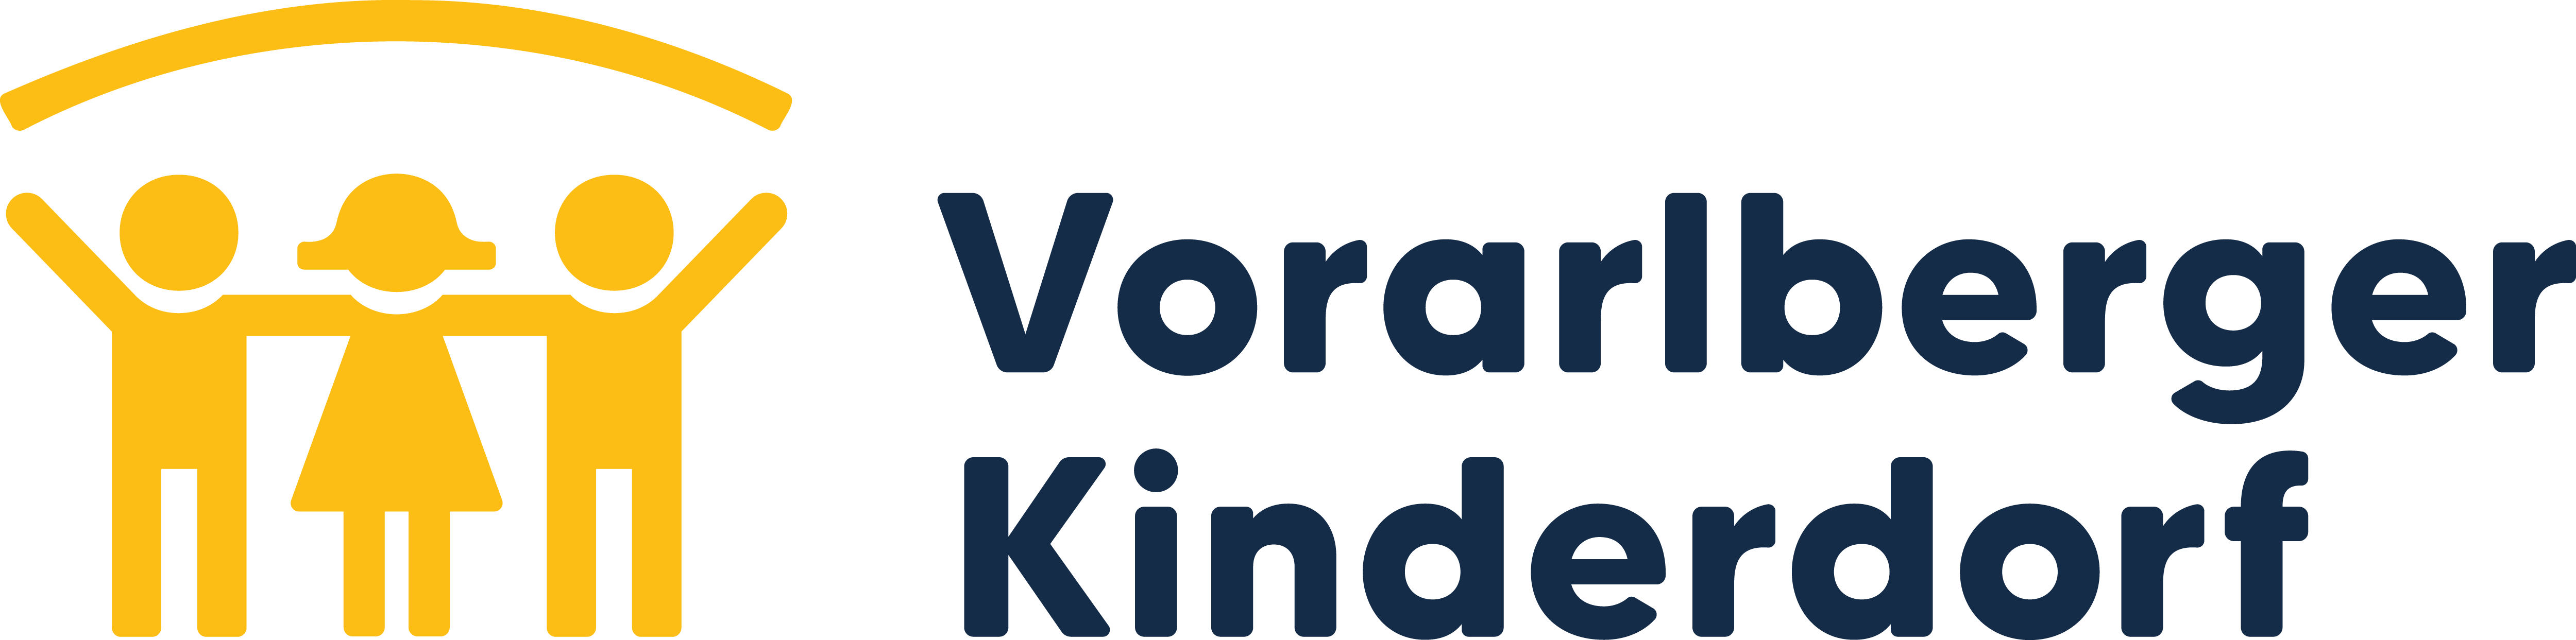 Vorarlberger Kinderdorf Logo